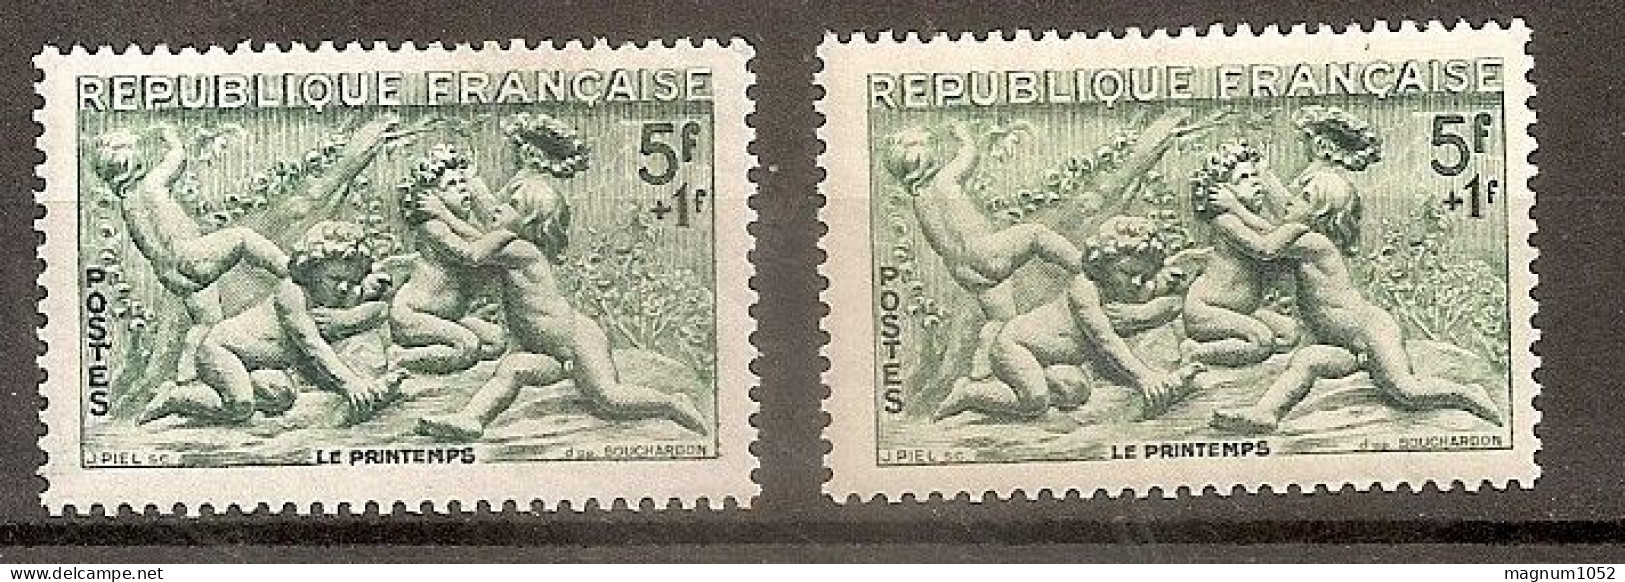 VARIETE N 859 ** -  1 TB BLEU VERT AU LIEU DE VERT    - TRES VISIBLE AU SCANN - RRR !!! - Unused Stamps